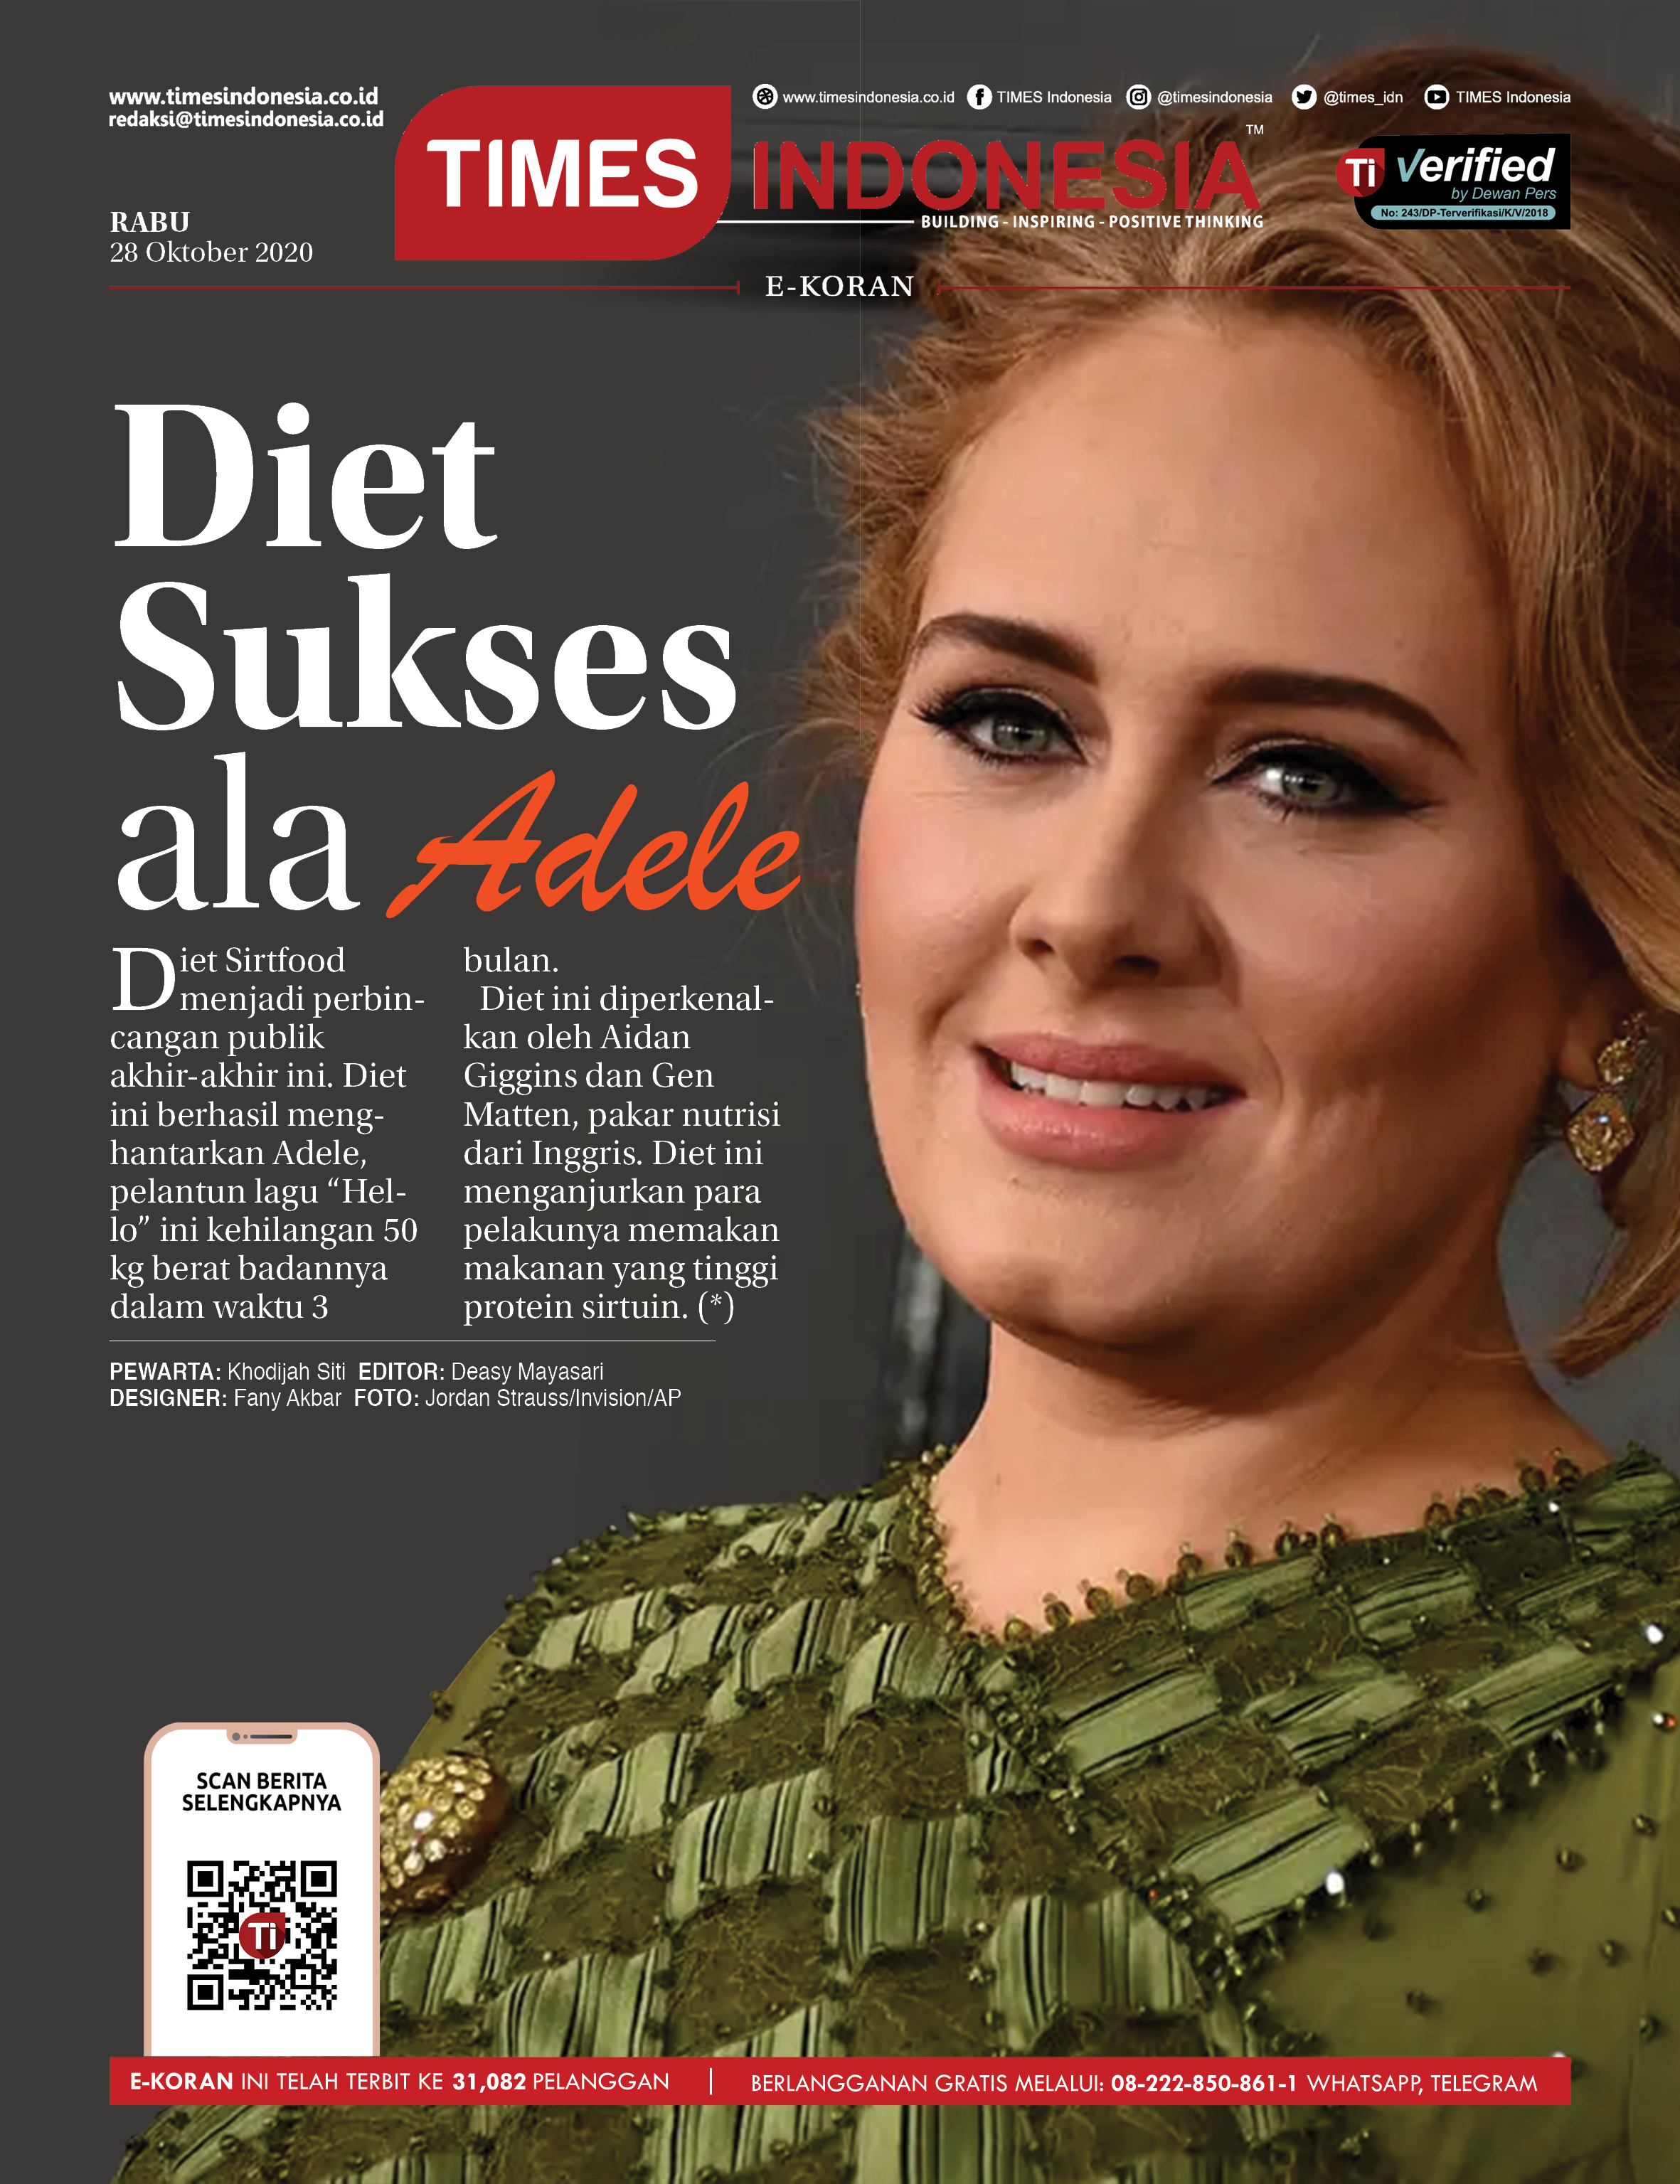 Ekoran-28-10-2020-Diet-Sukses-ala-Adele.jpg